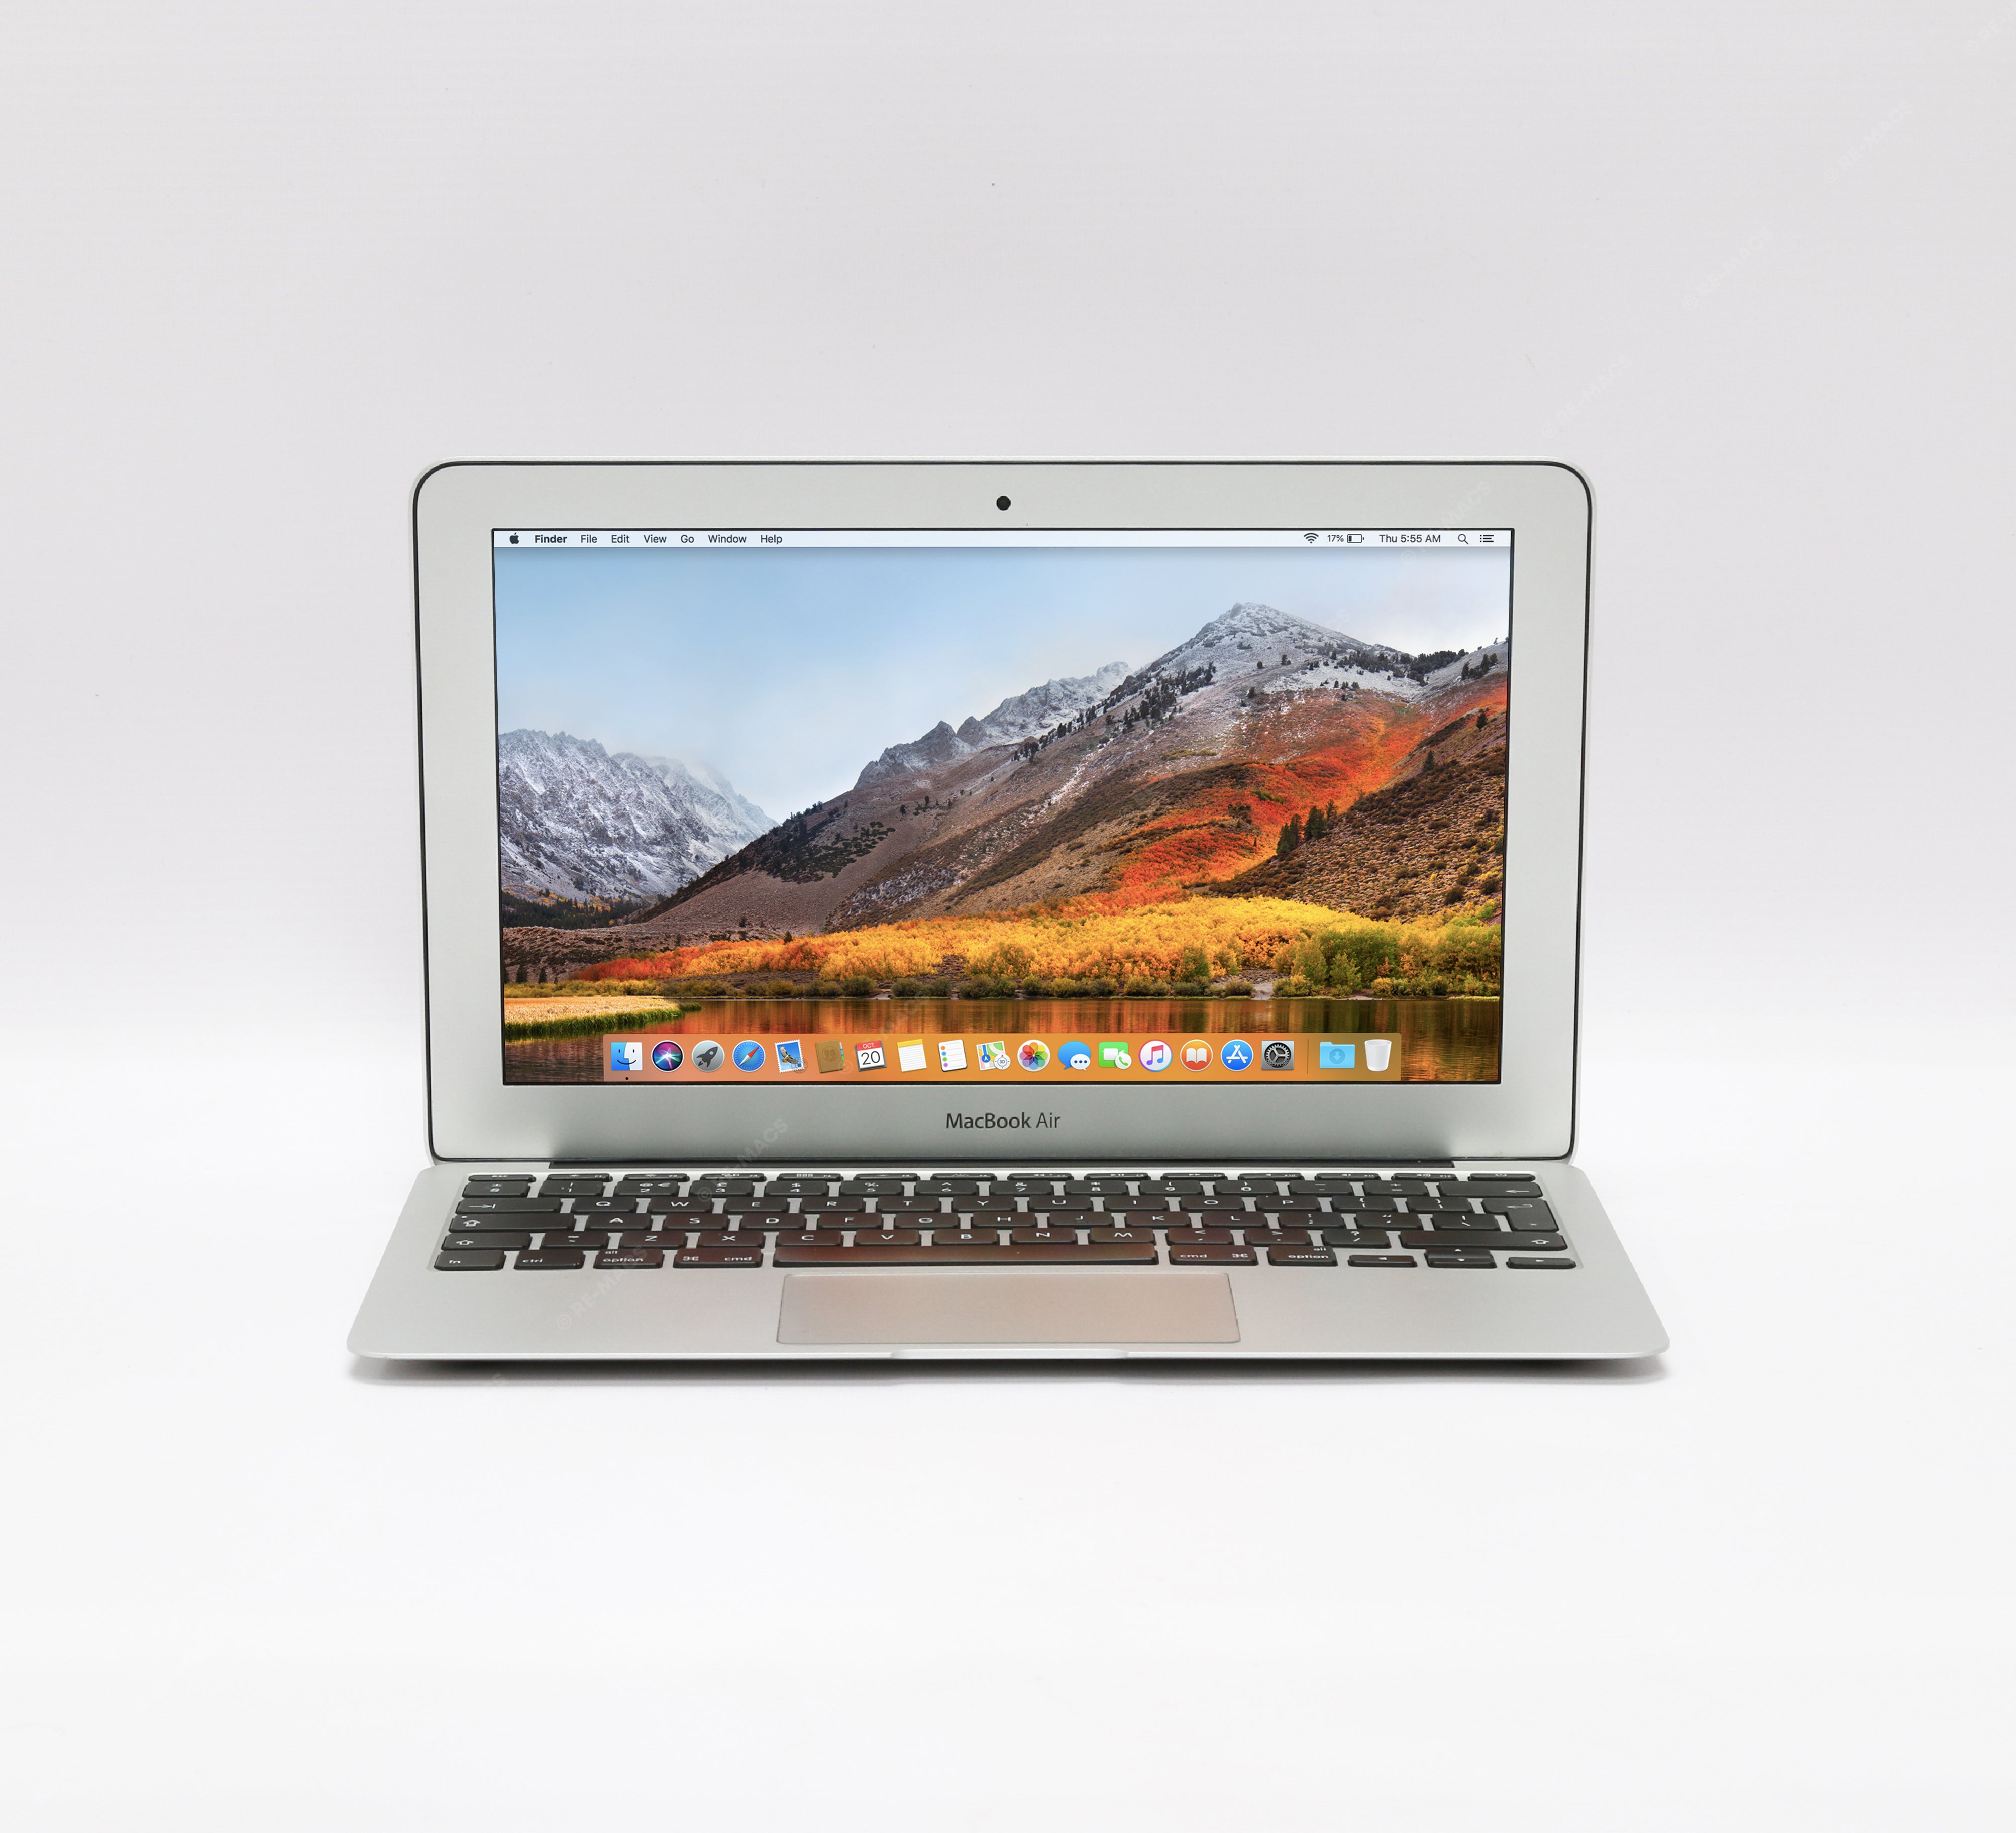 13-inch Apple MacBook Air 1.8GHz i7 4GB RAM 256GB SSD A1369 